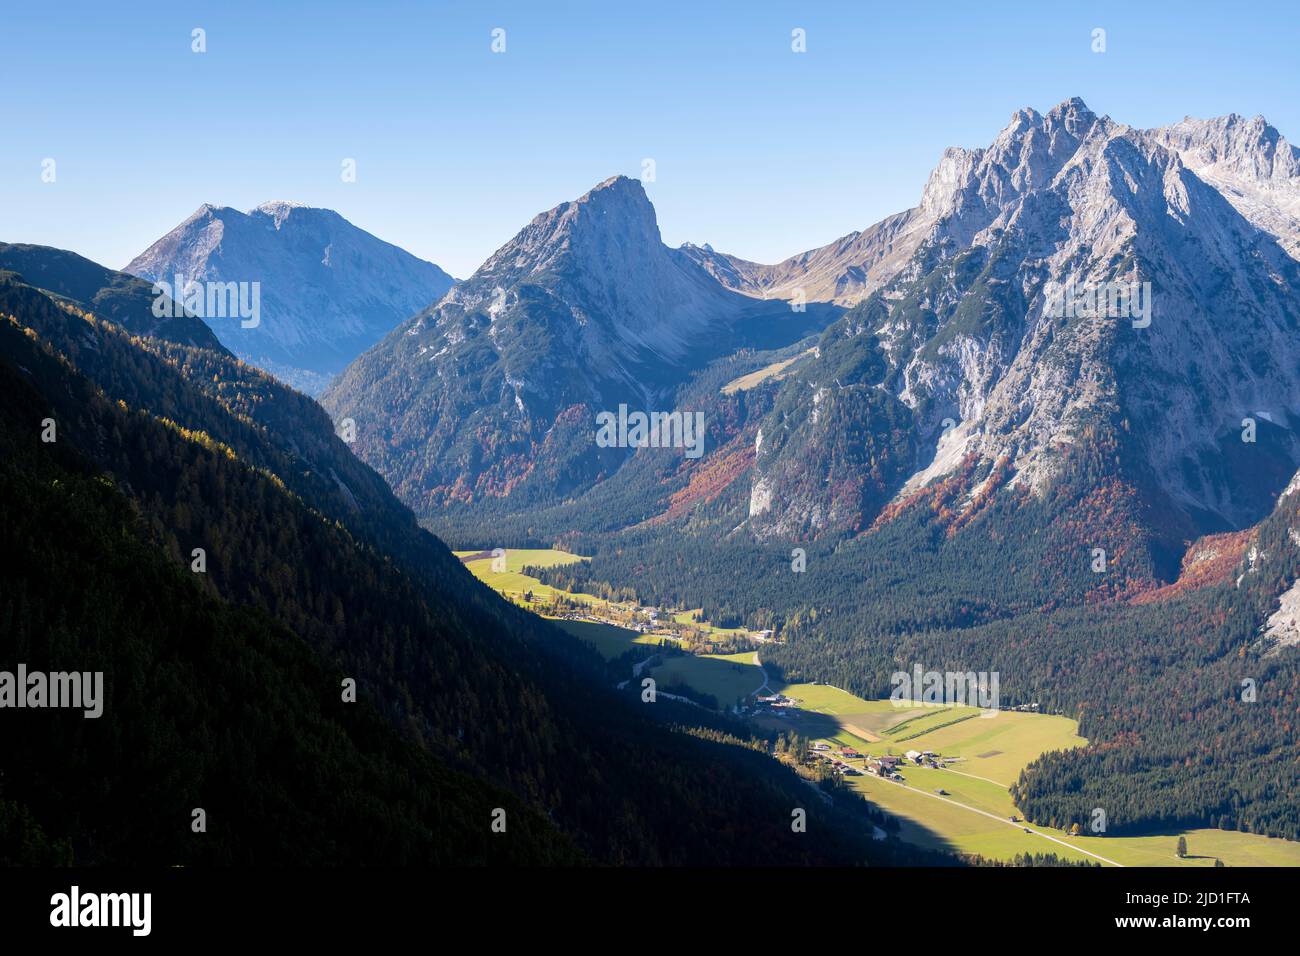 Karwendelspitze occidental, montagnes de Wetterstein, et vue de la grosse Arnspitze, vallée de montagne et montagnes, près de Scharnitz, Bavière, Allemagne Banque D'Images